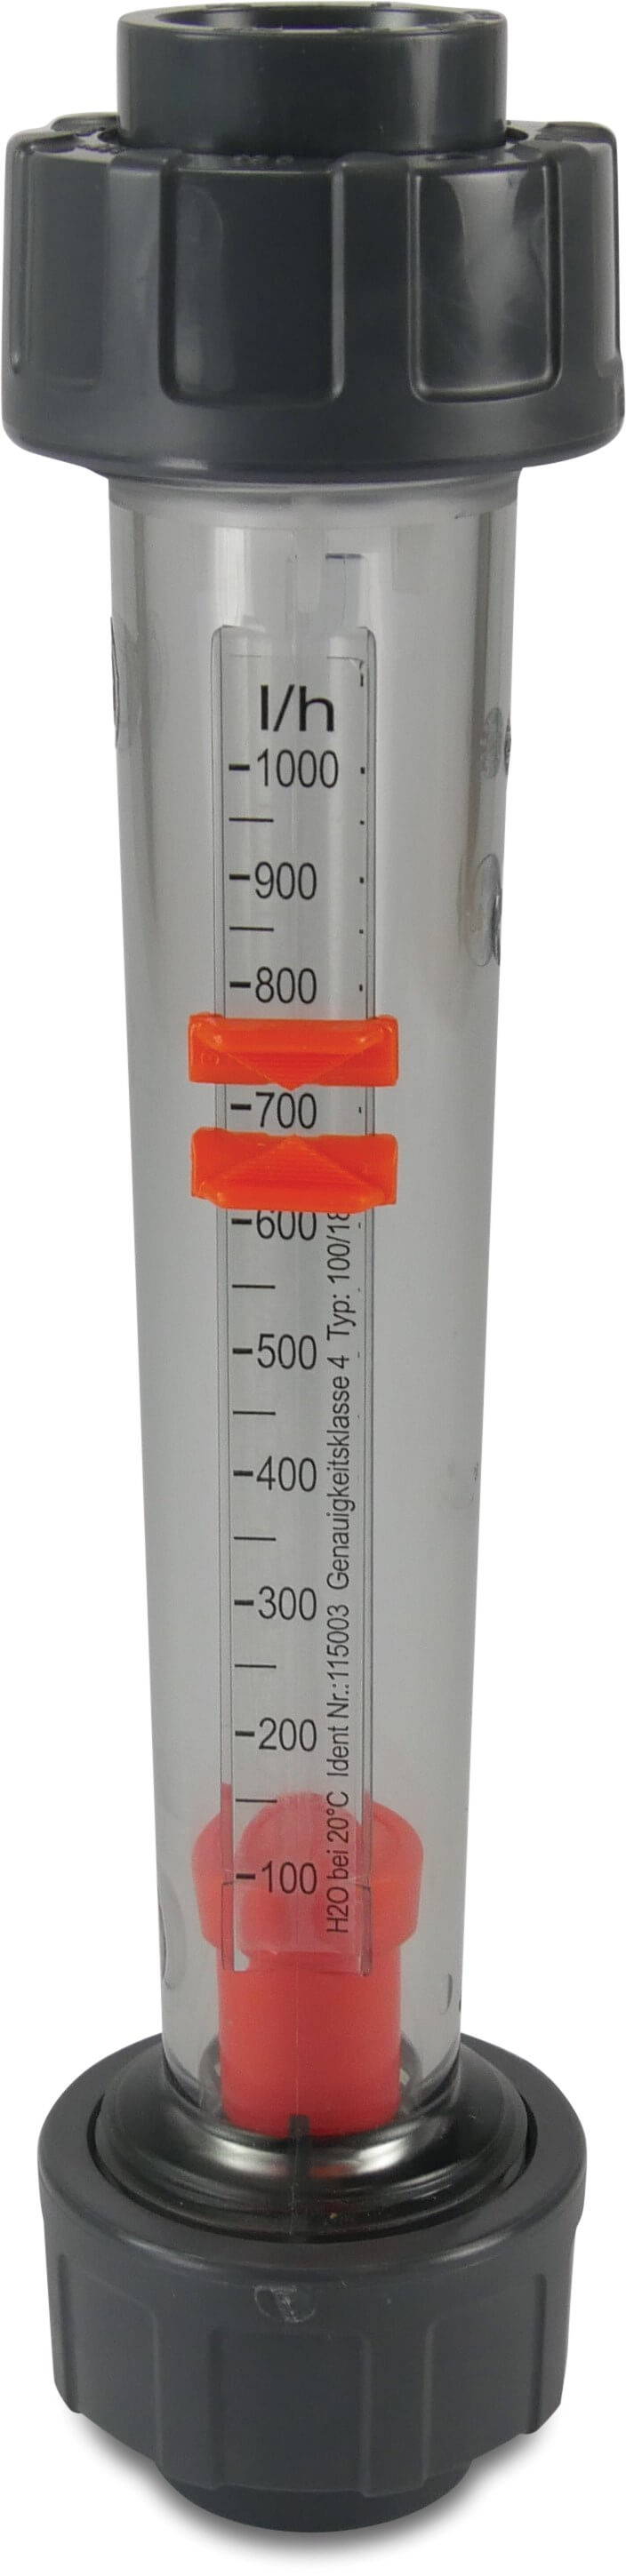 Flowmåler PVC-U DN15 x 20 mm x 20 mm limmuffe 10bar 15 25-250 l/t